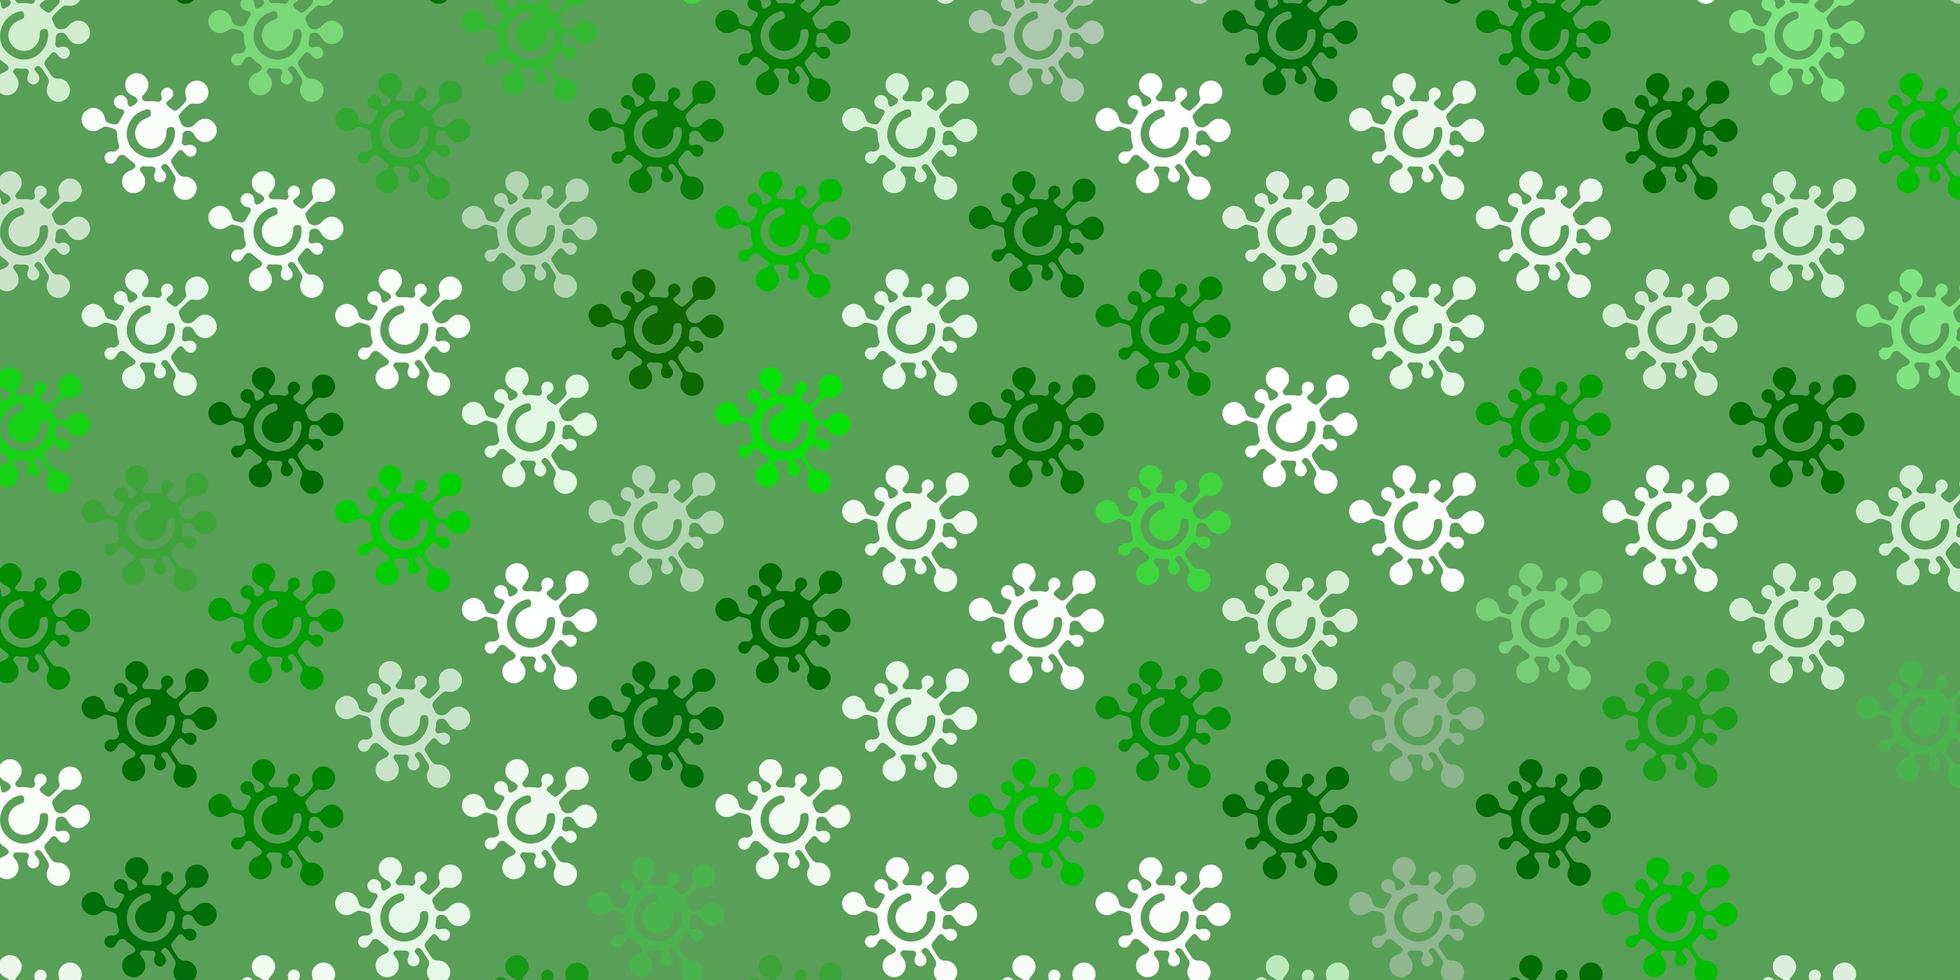 ljusgrön vektorbakgrund med covid19-symboler vektor